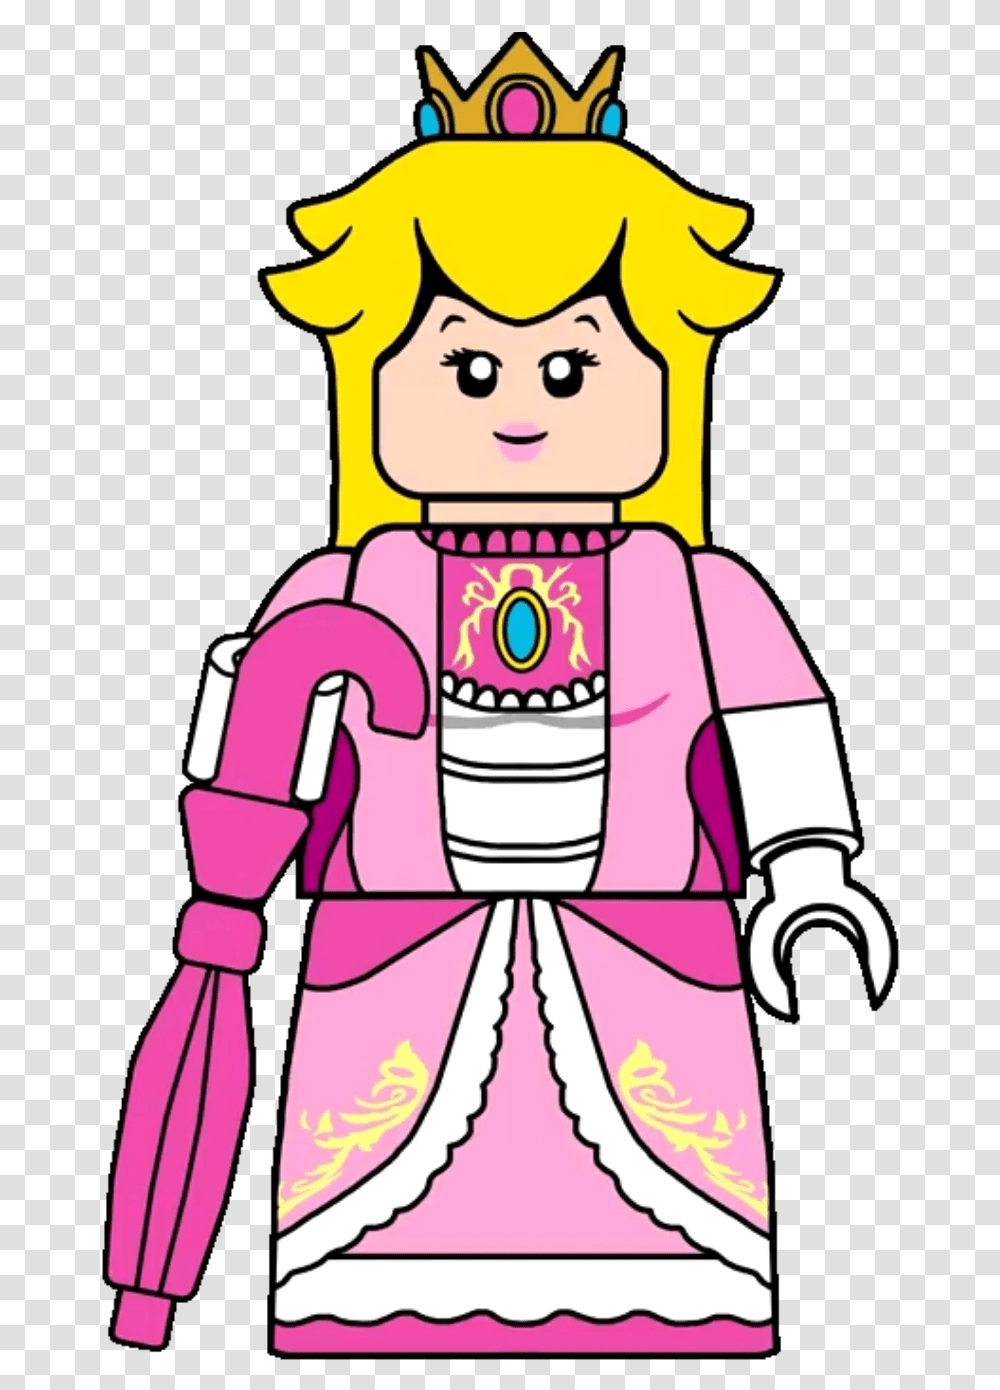 Princess Peach Shadow Queen Princess Peach Lego, Robot, Nutcracker Transparent Png